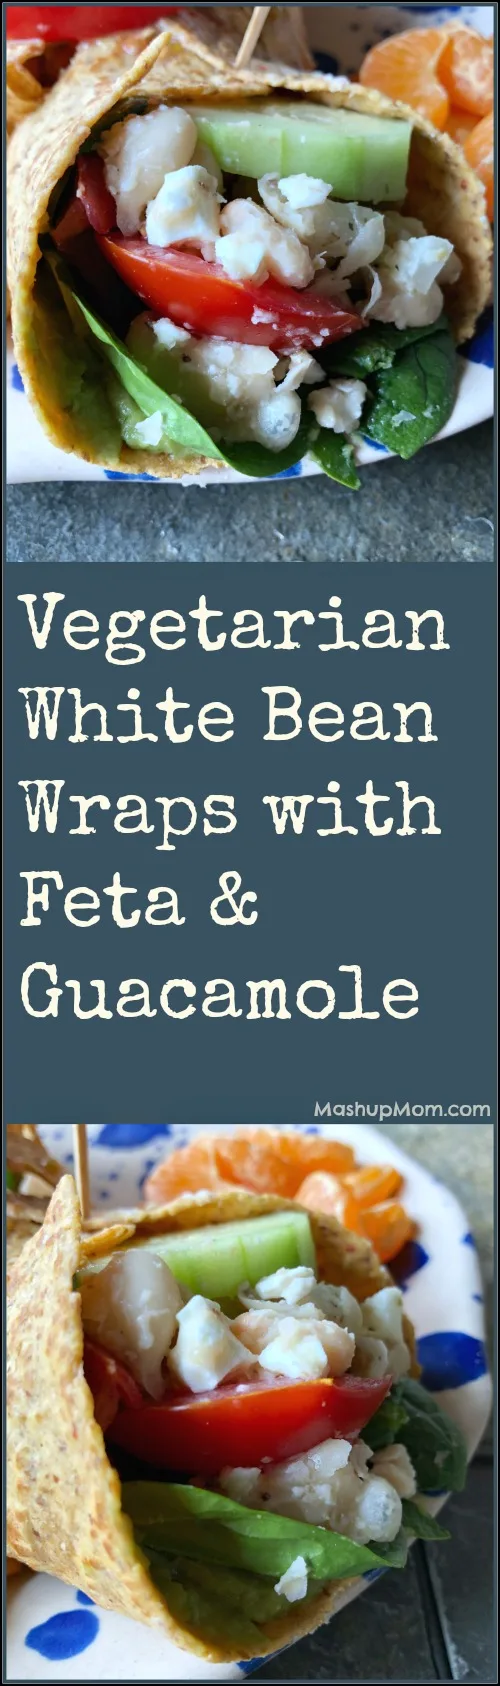 vegetarian white bean wraps with feta & guacamole